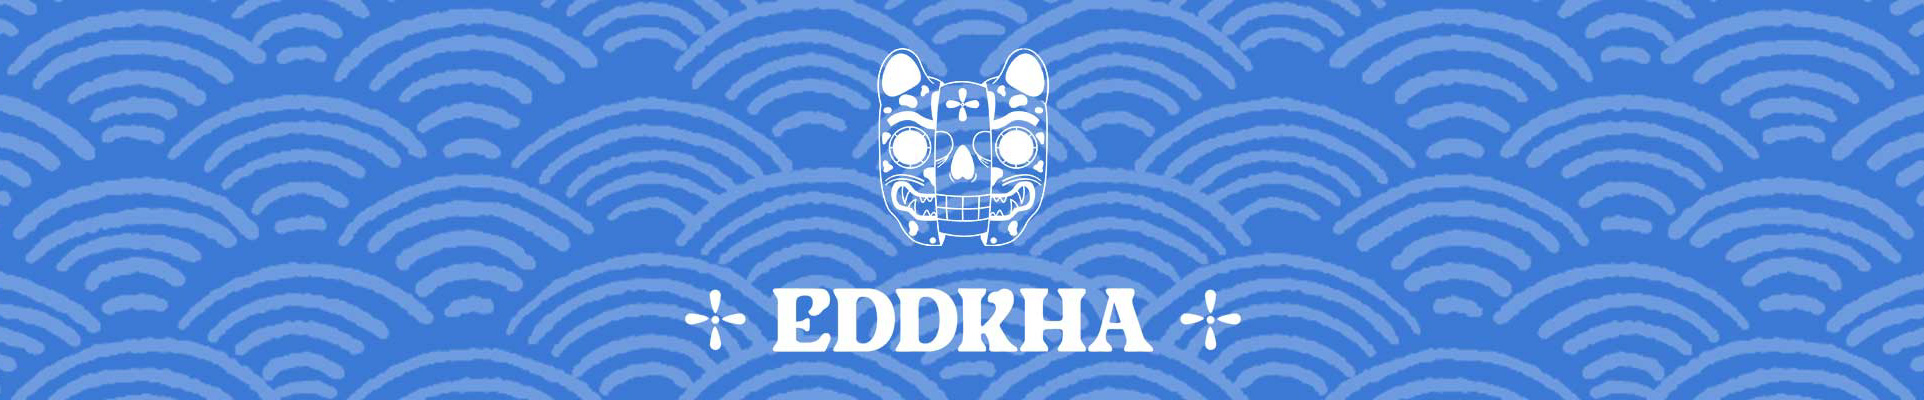 Banner de perfil de Eddkha .